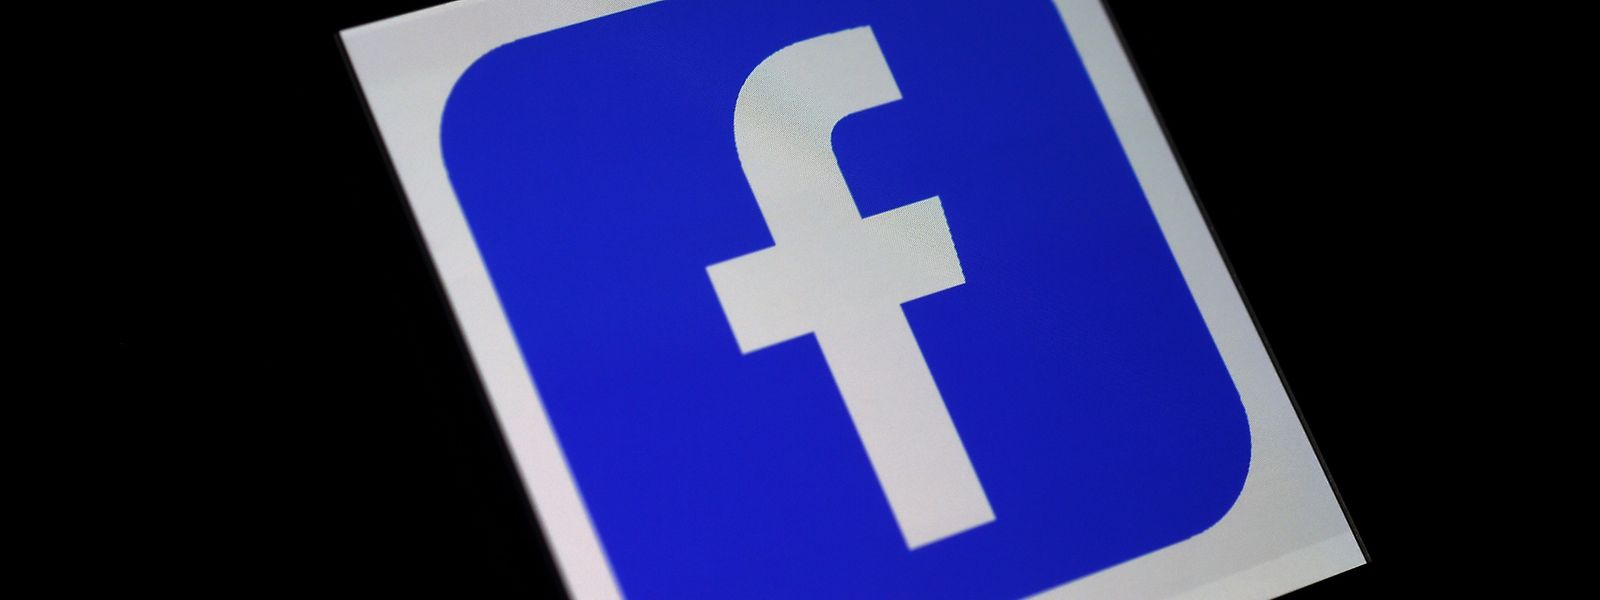 Facebook steht im Zentrum der Kritik, weil die Plattform nicht ausreichend gegen Hassrede und Desinformation vorgeht.